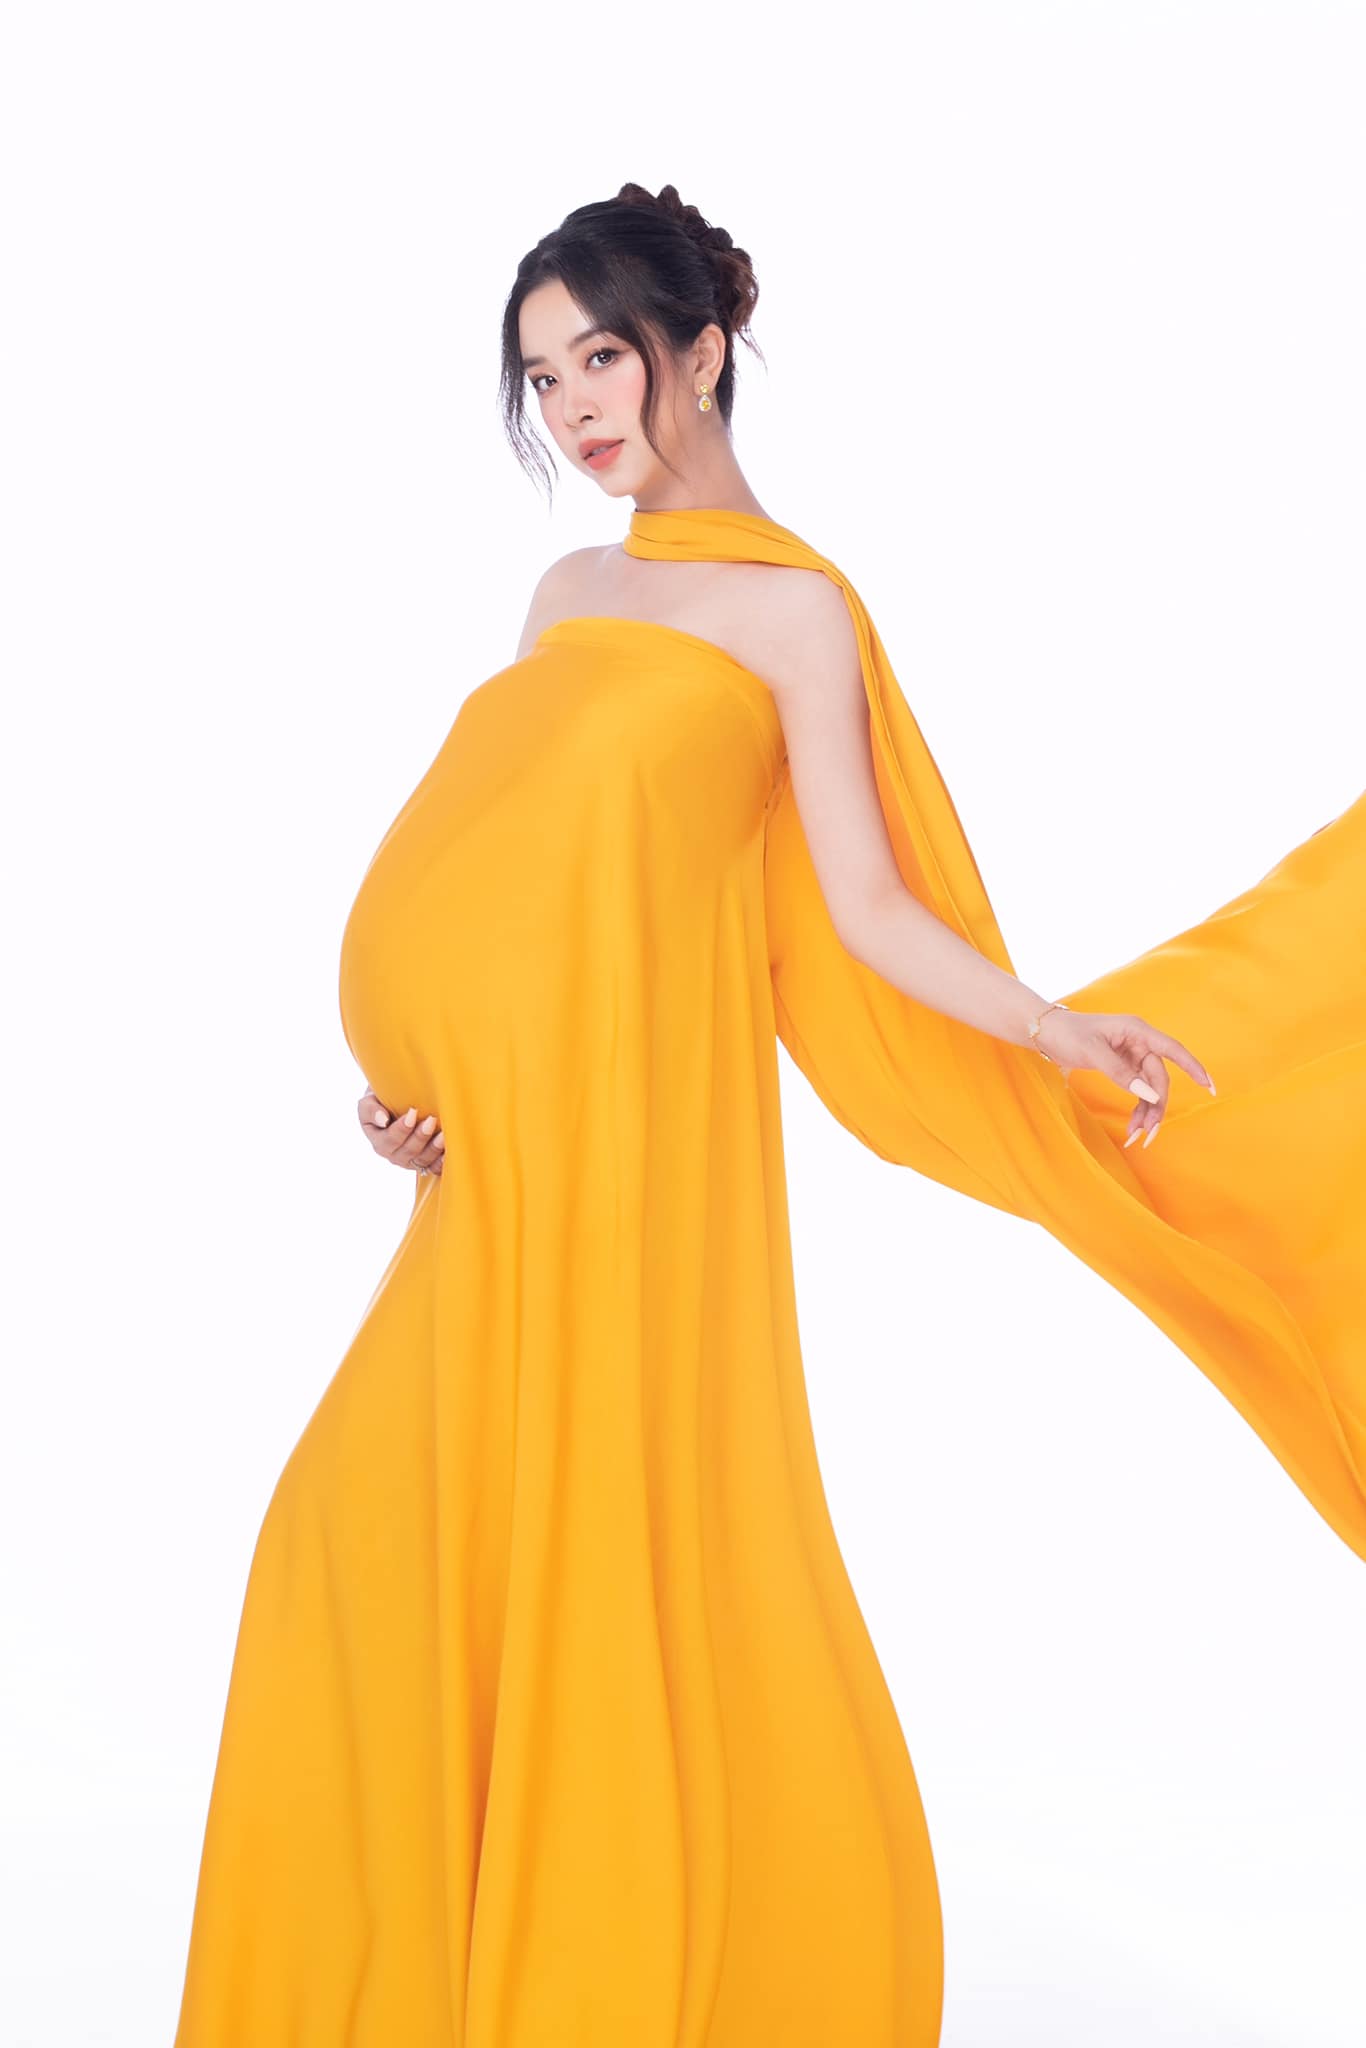 1 nàng hậu của Hoa hậu Việt Nam xác nhận sinh con gái đầu lòng  - Ảnh 1.